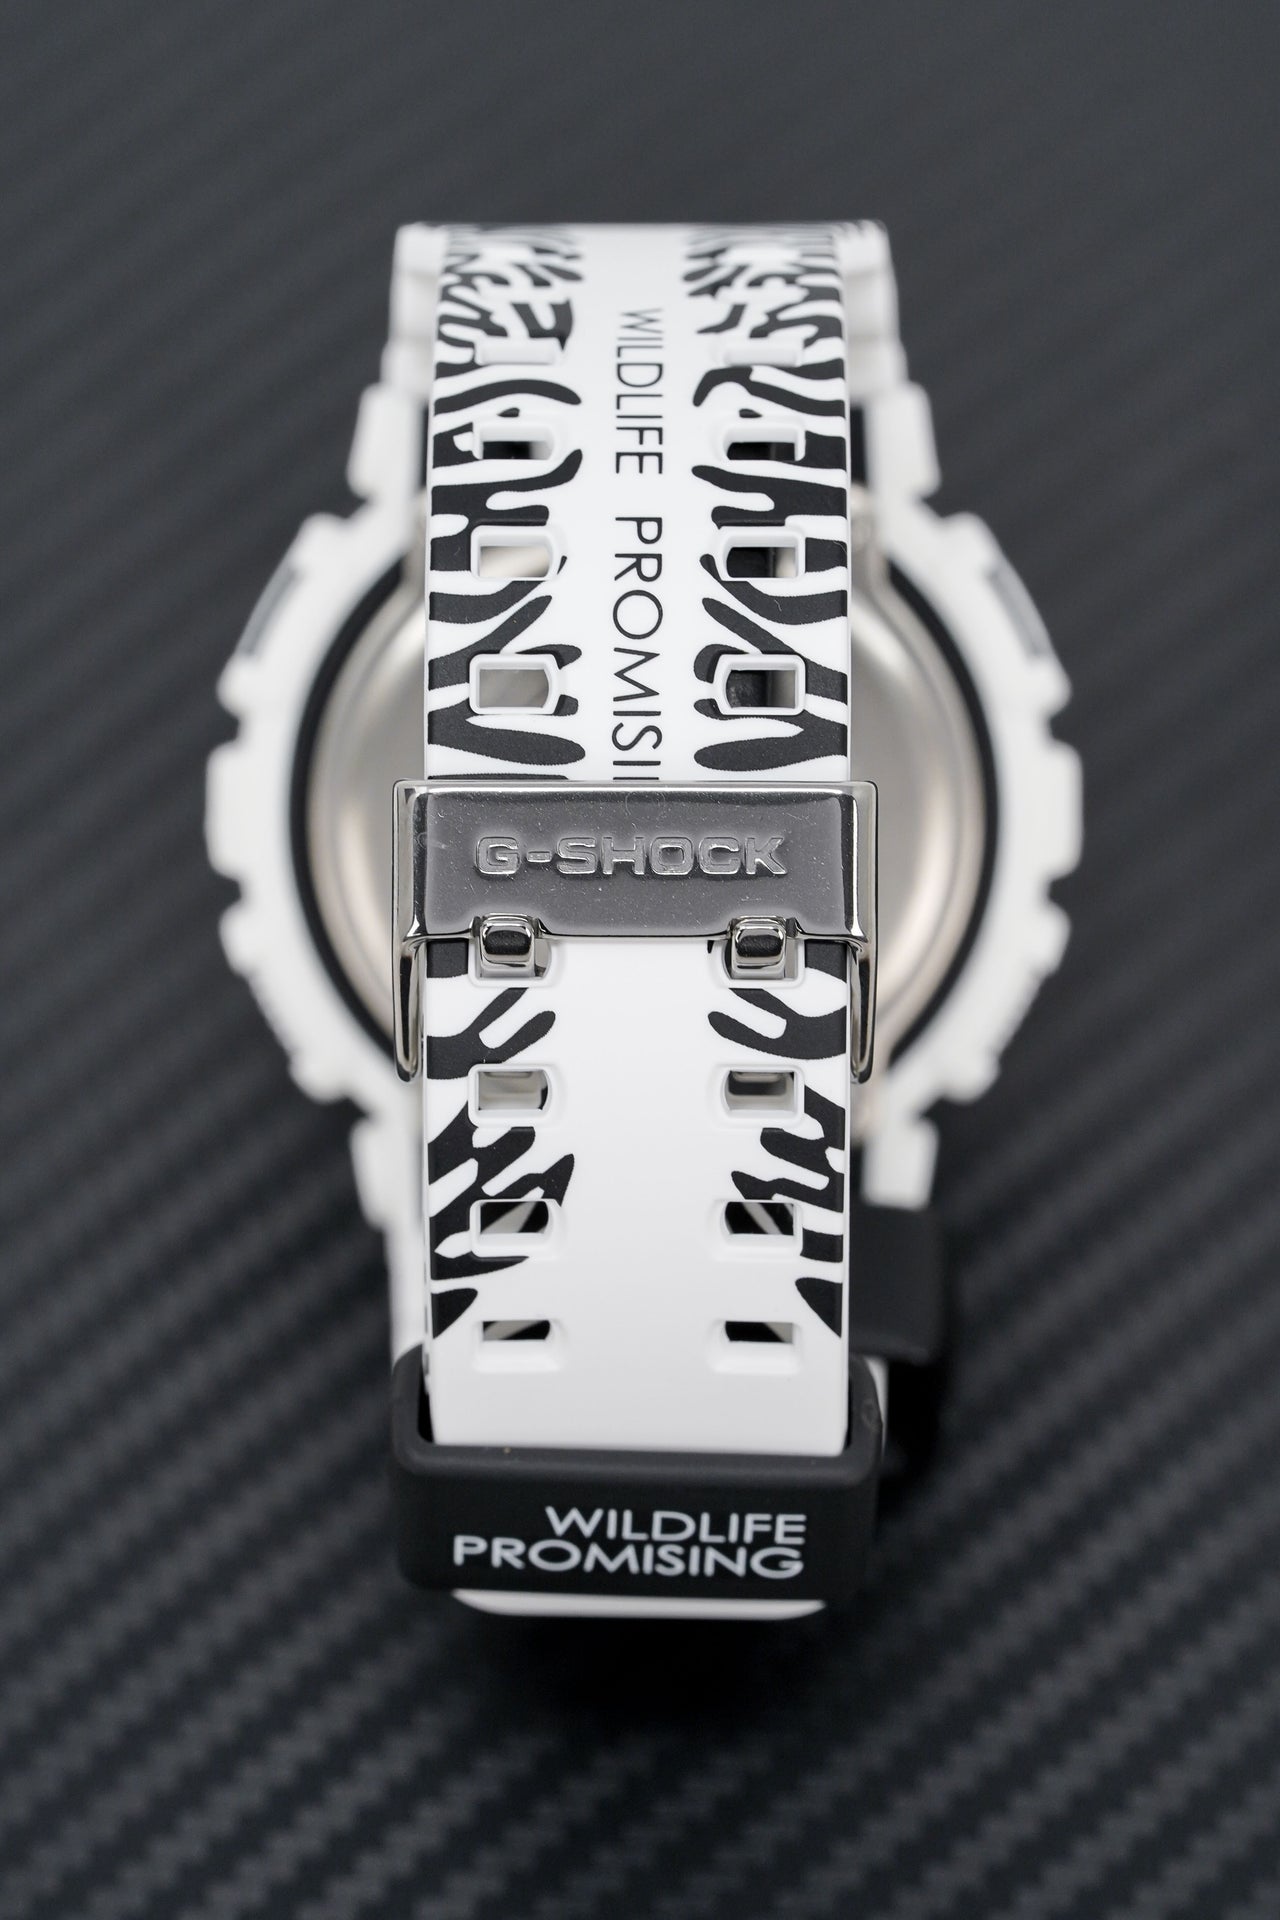 Casio G-Shock Watch Men's Wildlife Promising Limited Edition Zebra GA-110WLP-7ADR